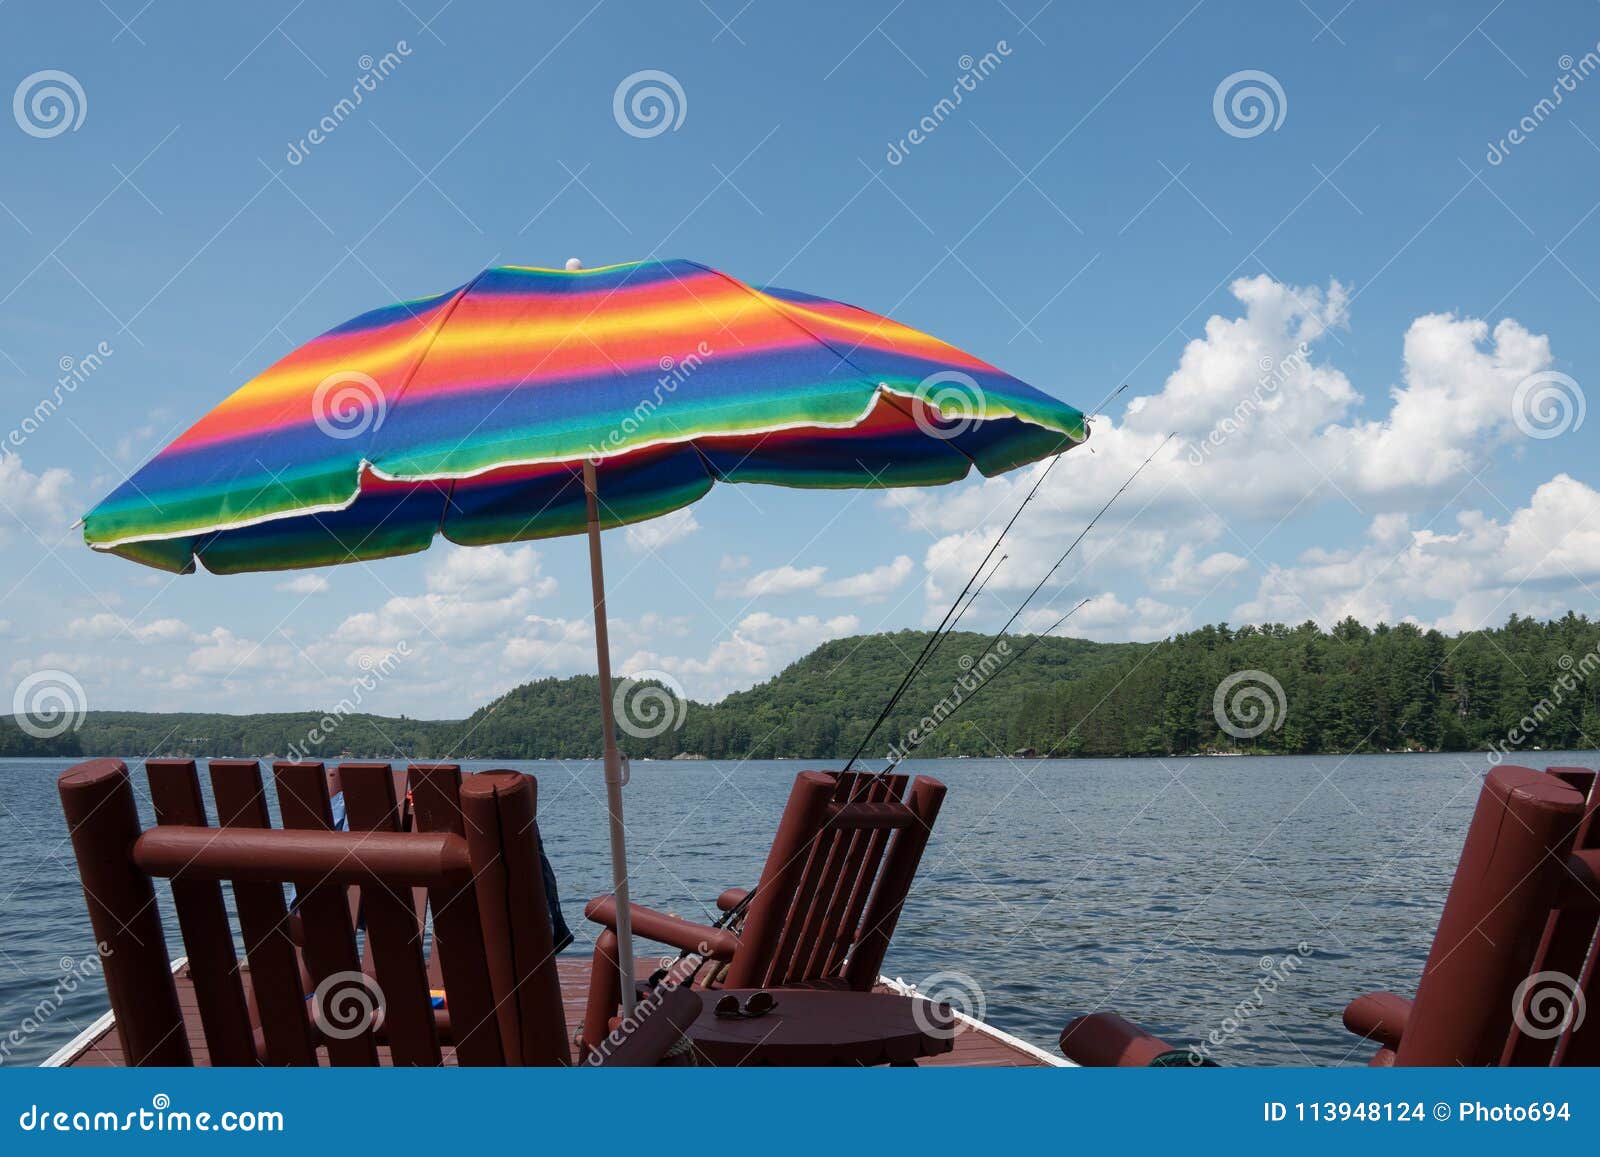 A Multi-colored Sunshade Umbrella on a Lakeside Dock Stock Photo